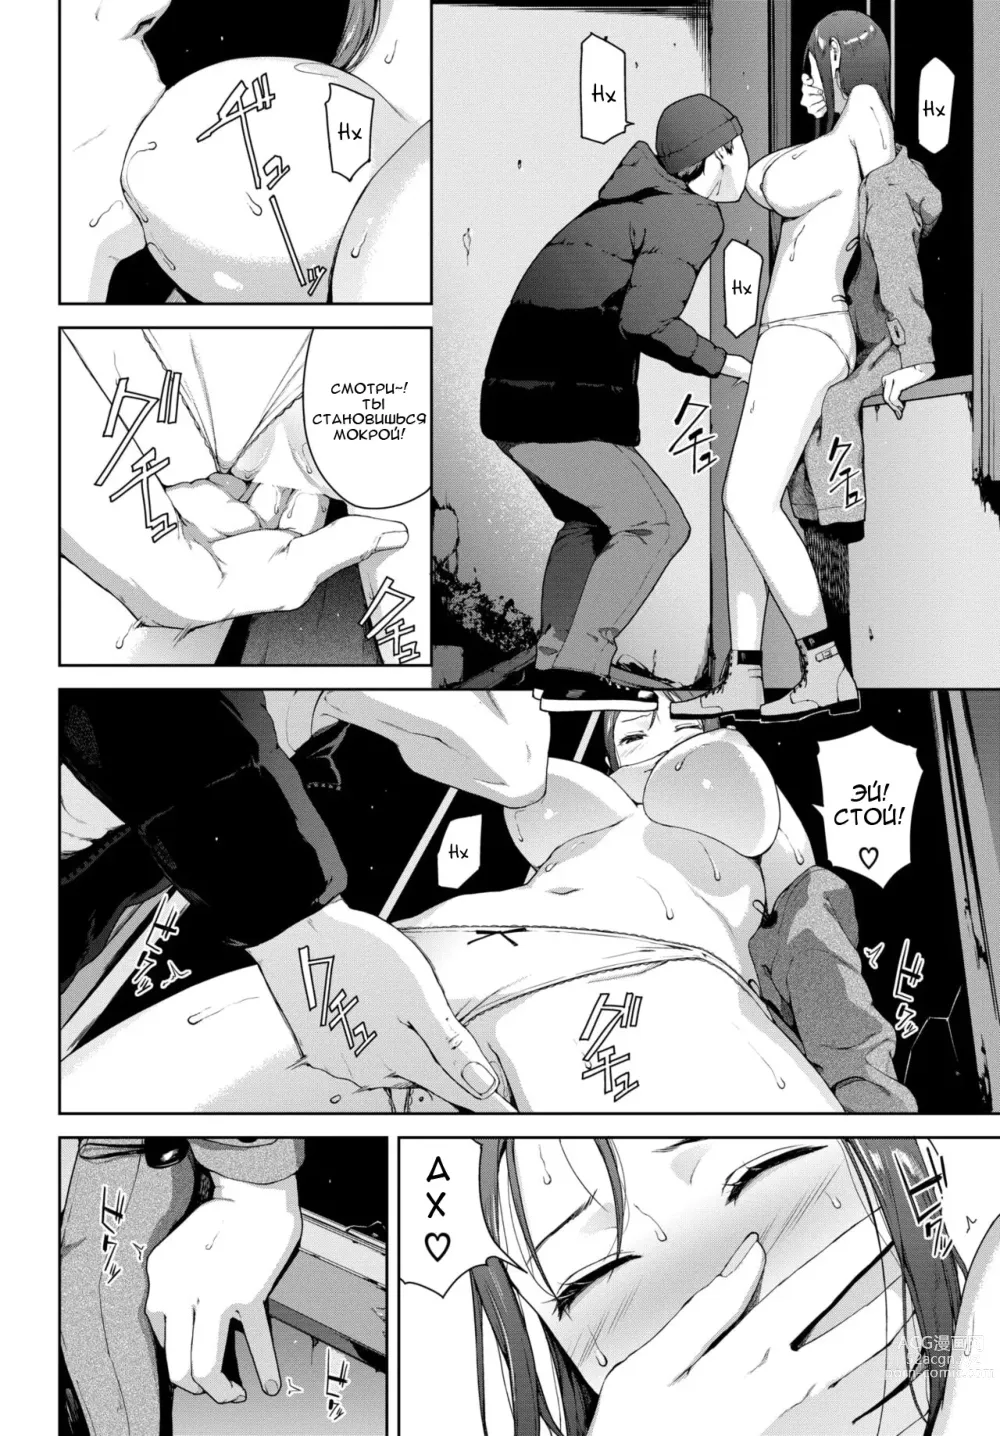 Page 6 of manga Toukou Douga